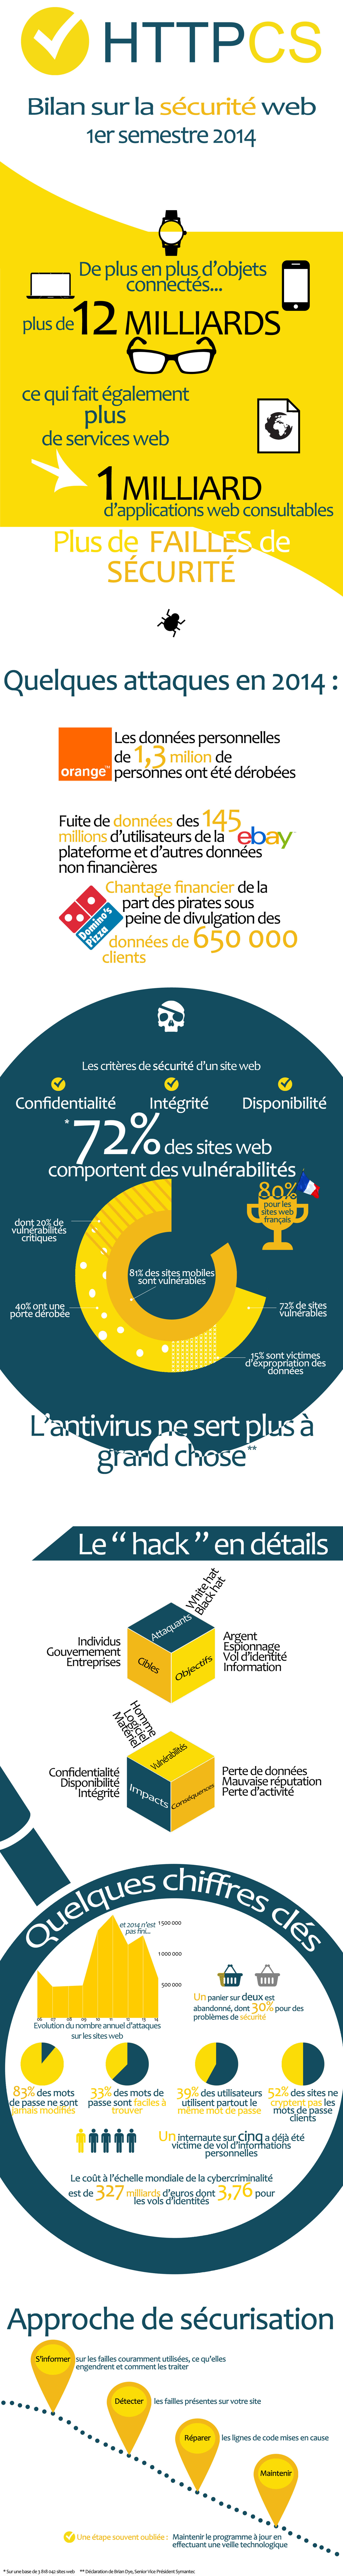 attaques sur le web en 2014